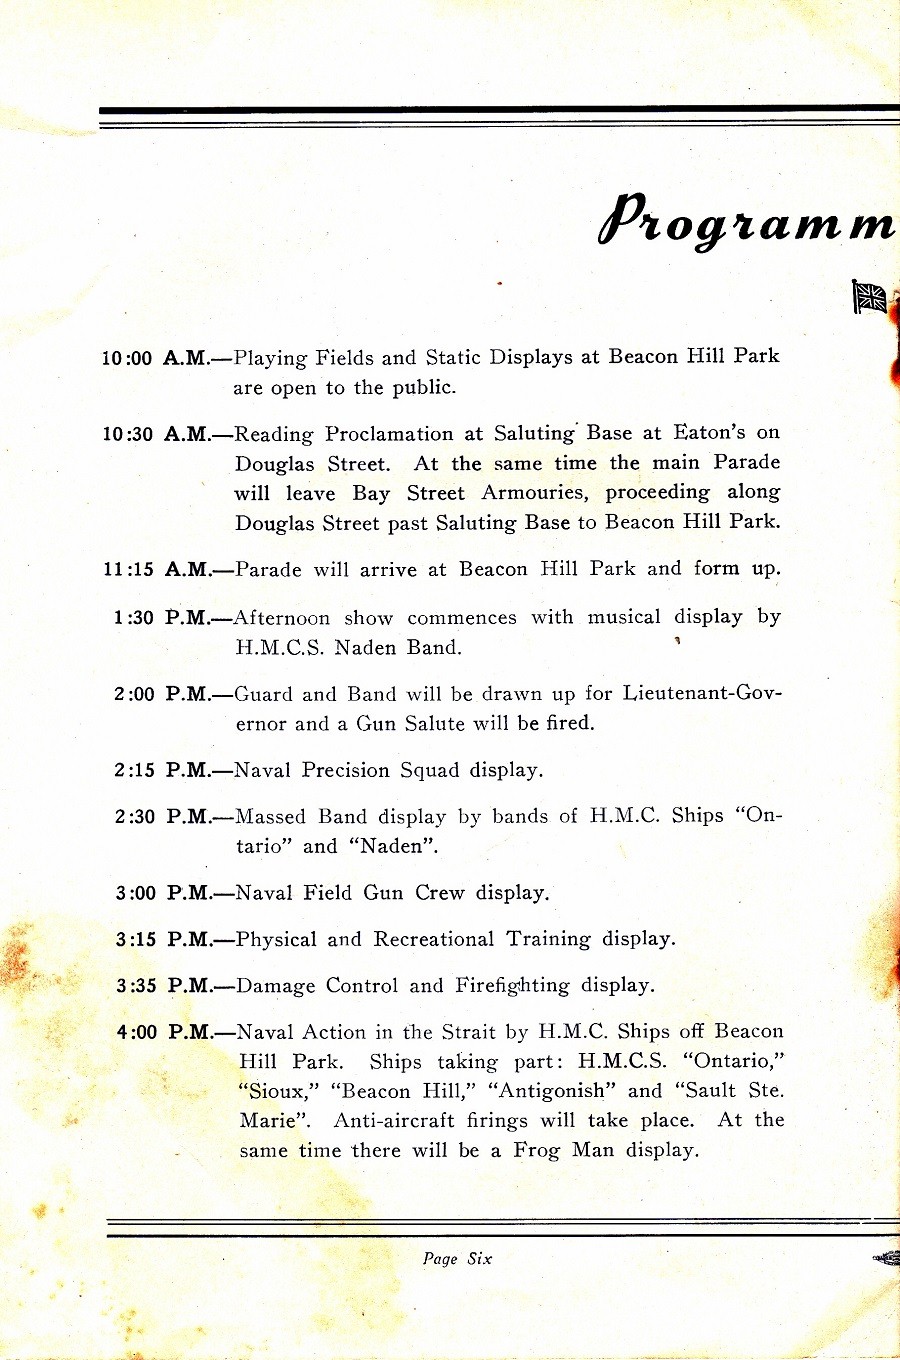 RCN NAVY DAYS 26 July 1952 - Page 6